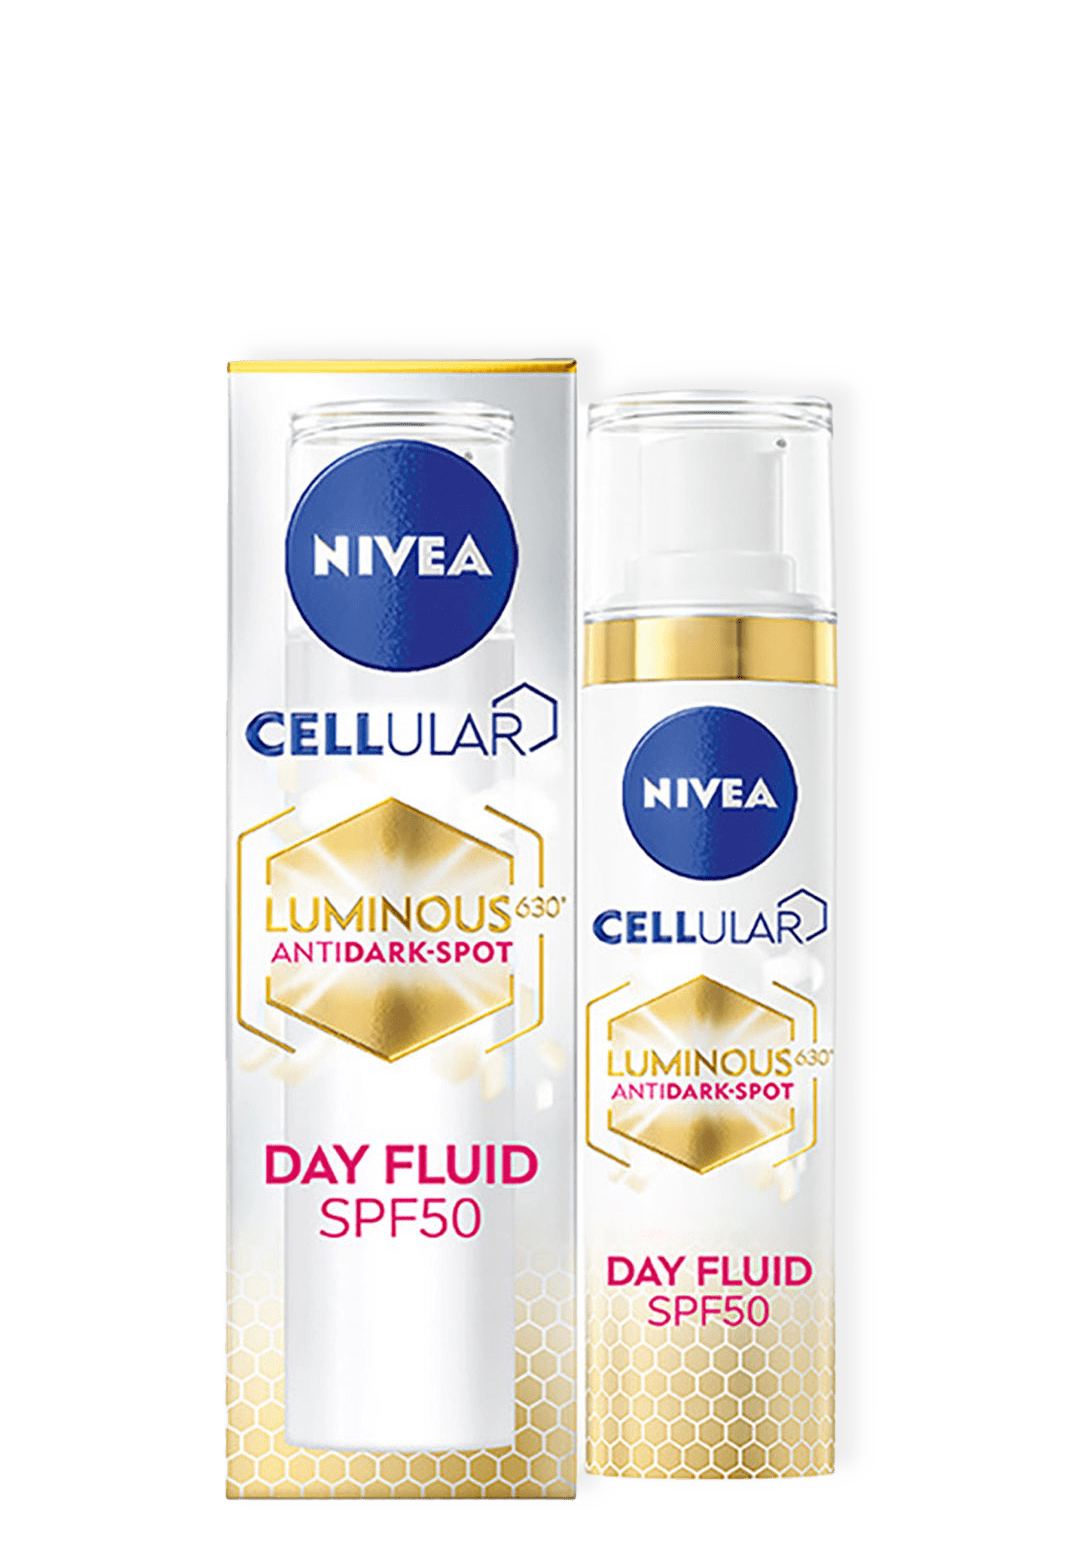 Cellular Luminous630 Anti Dark-Spot Day Fluid från NIVEA